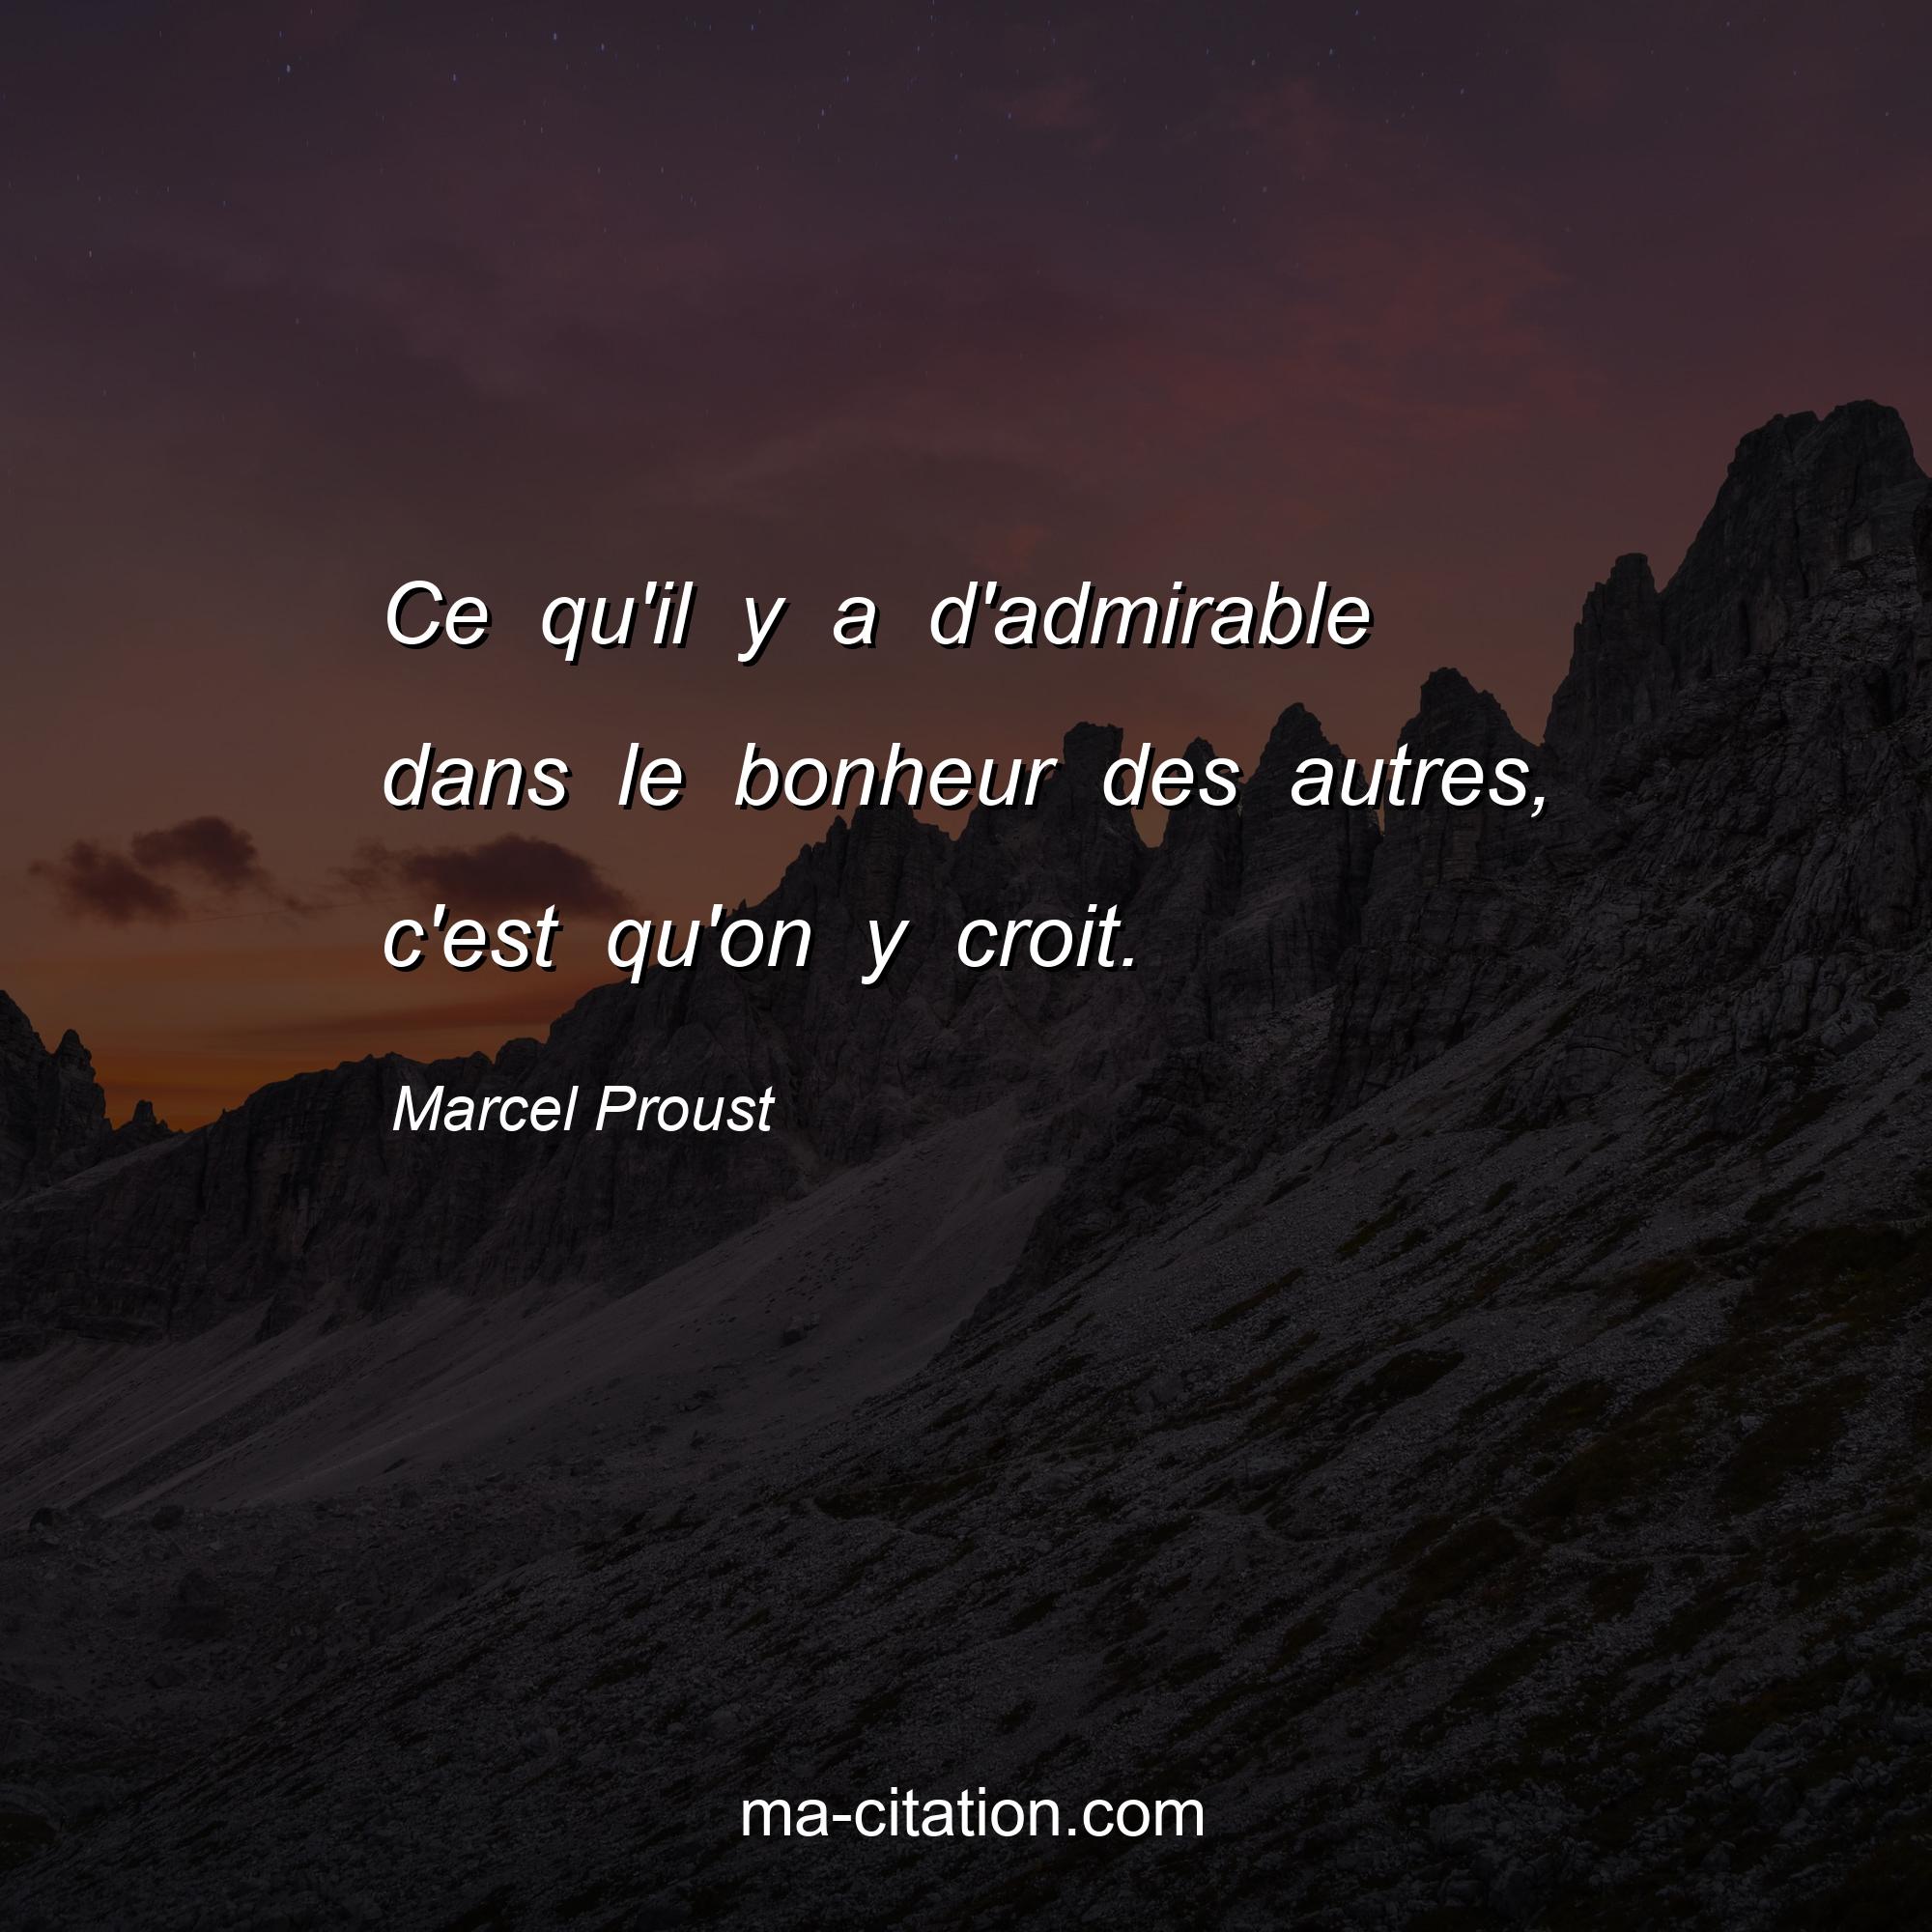 Marcel Proust : Ce qu'il y a d'admirable dans le bonheur des autres, c'est qu'on y croit.